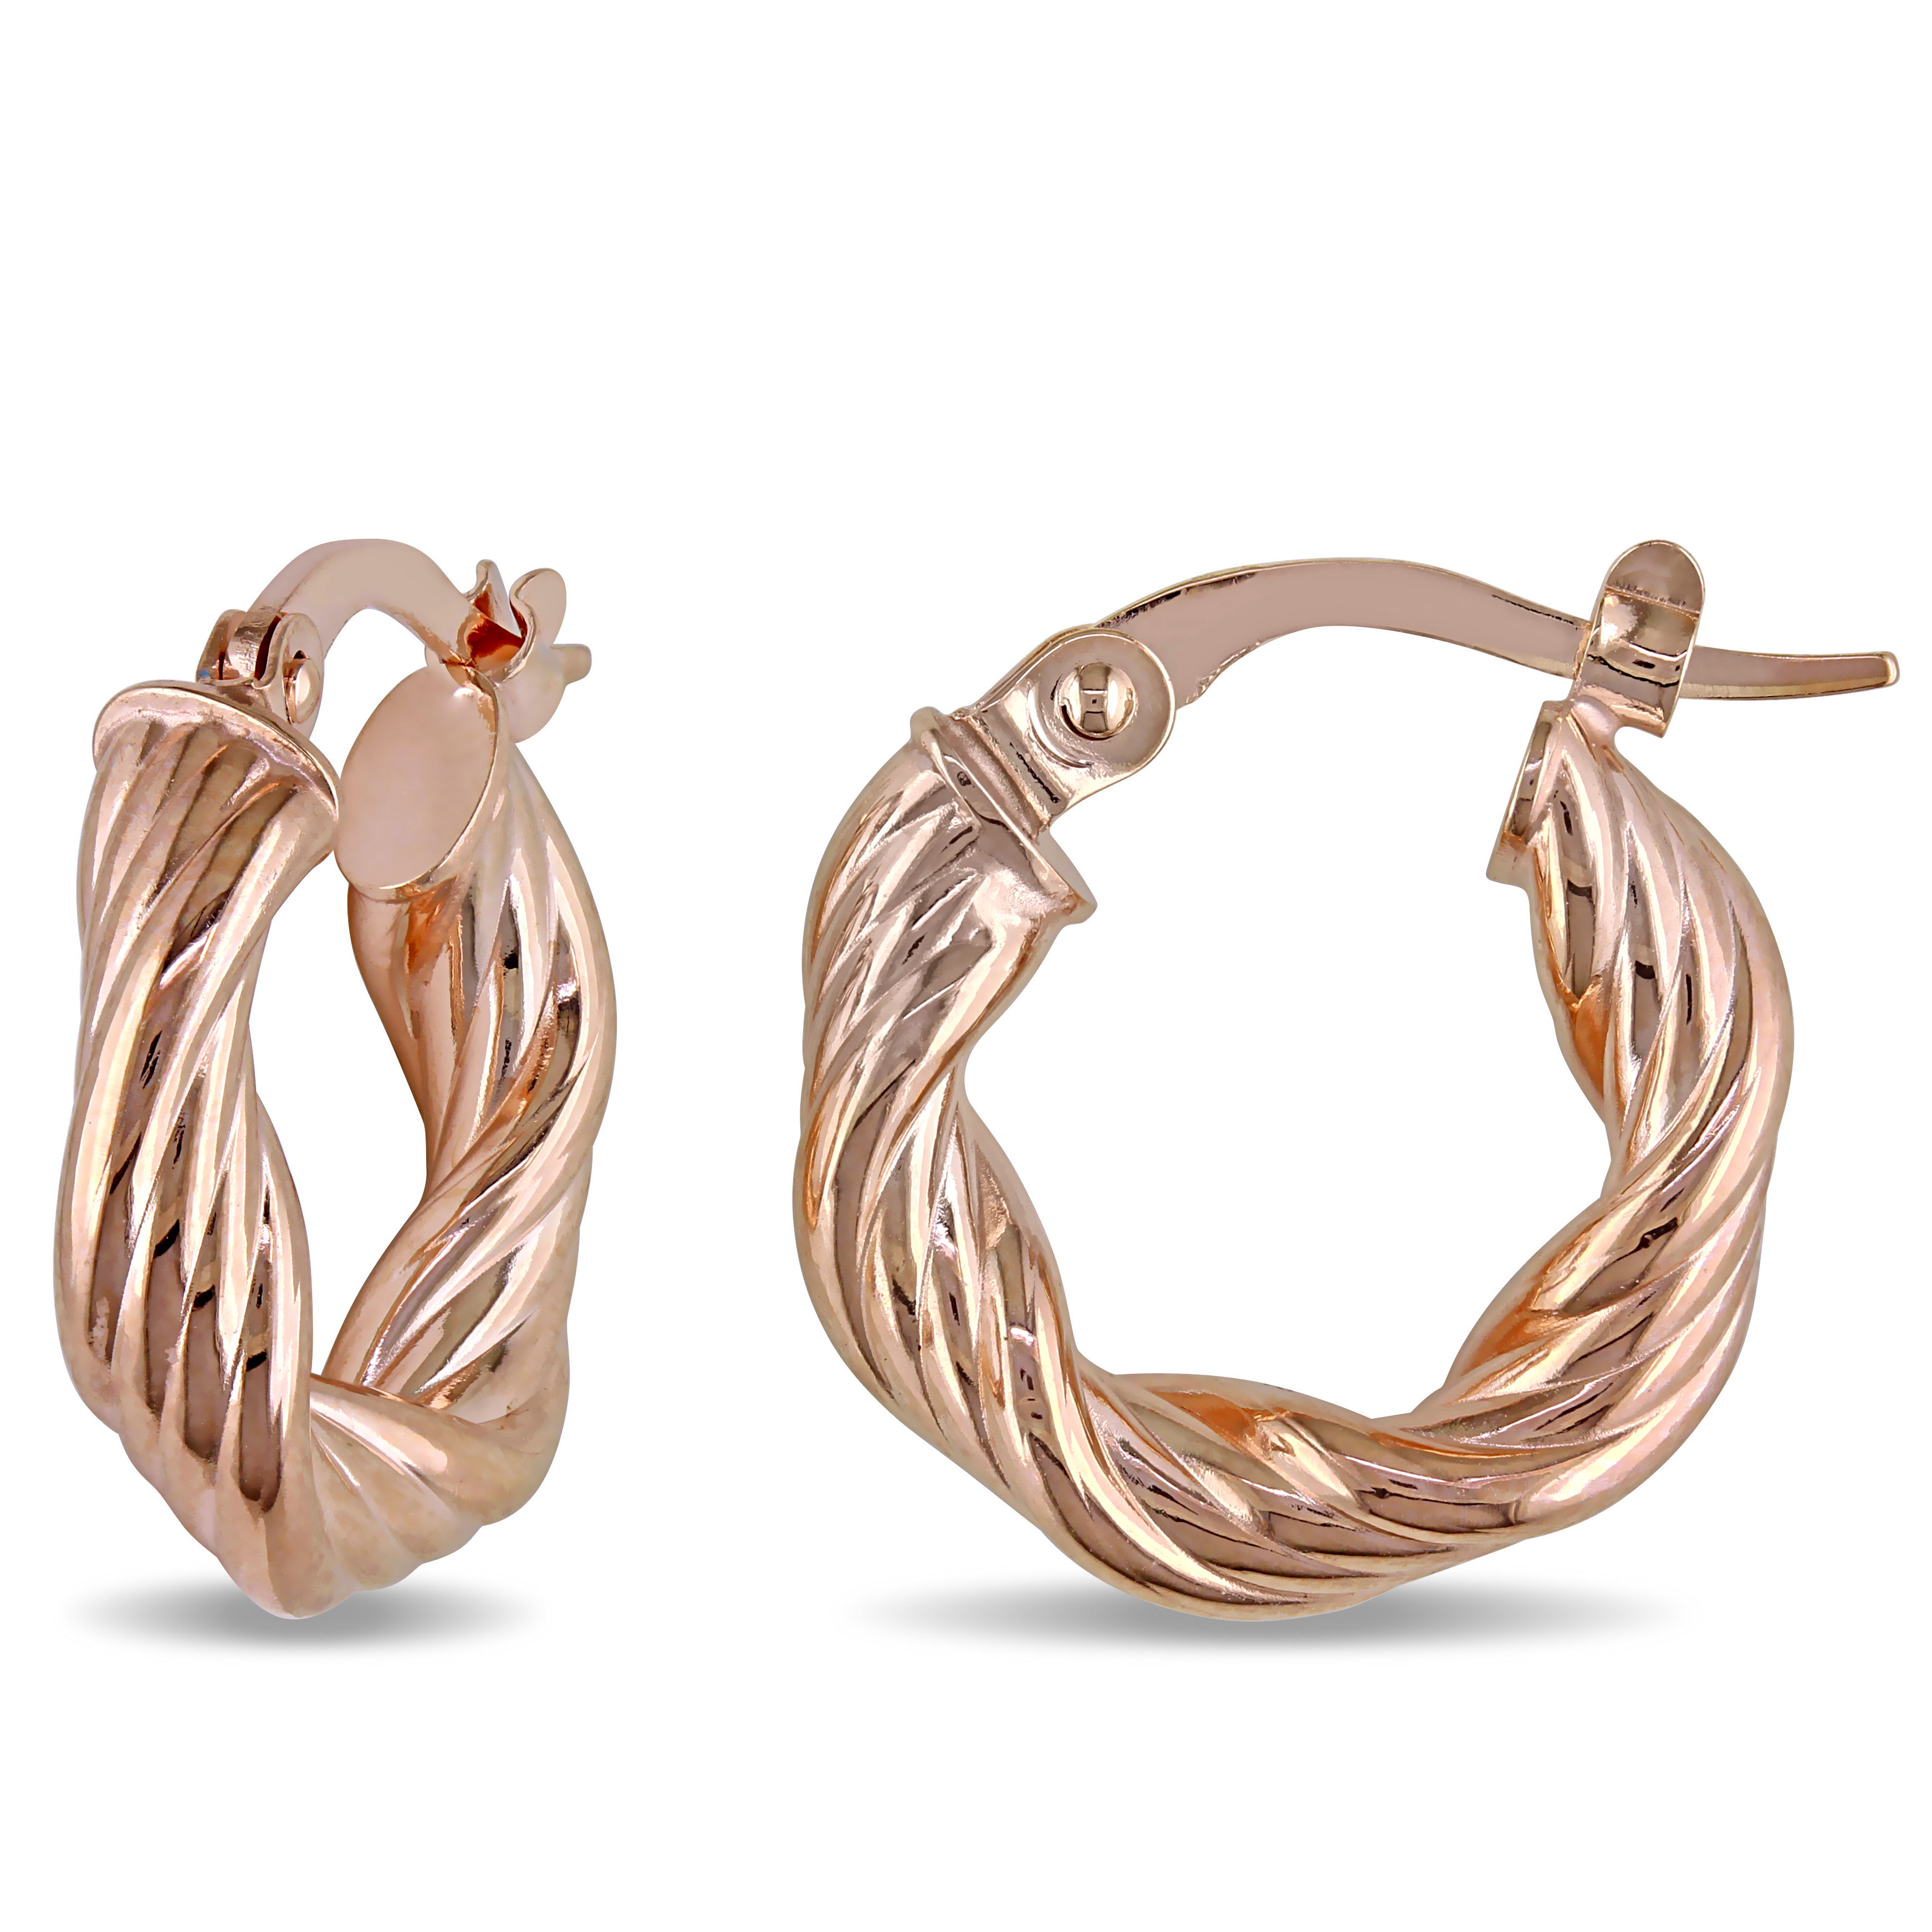 Twisted Textured Hinged Hoop Earrings in 10k Rose Gold